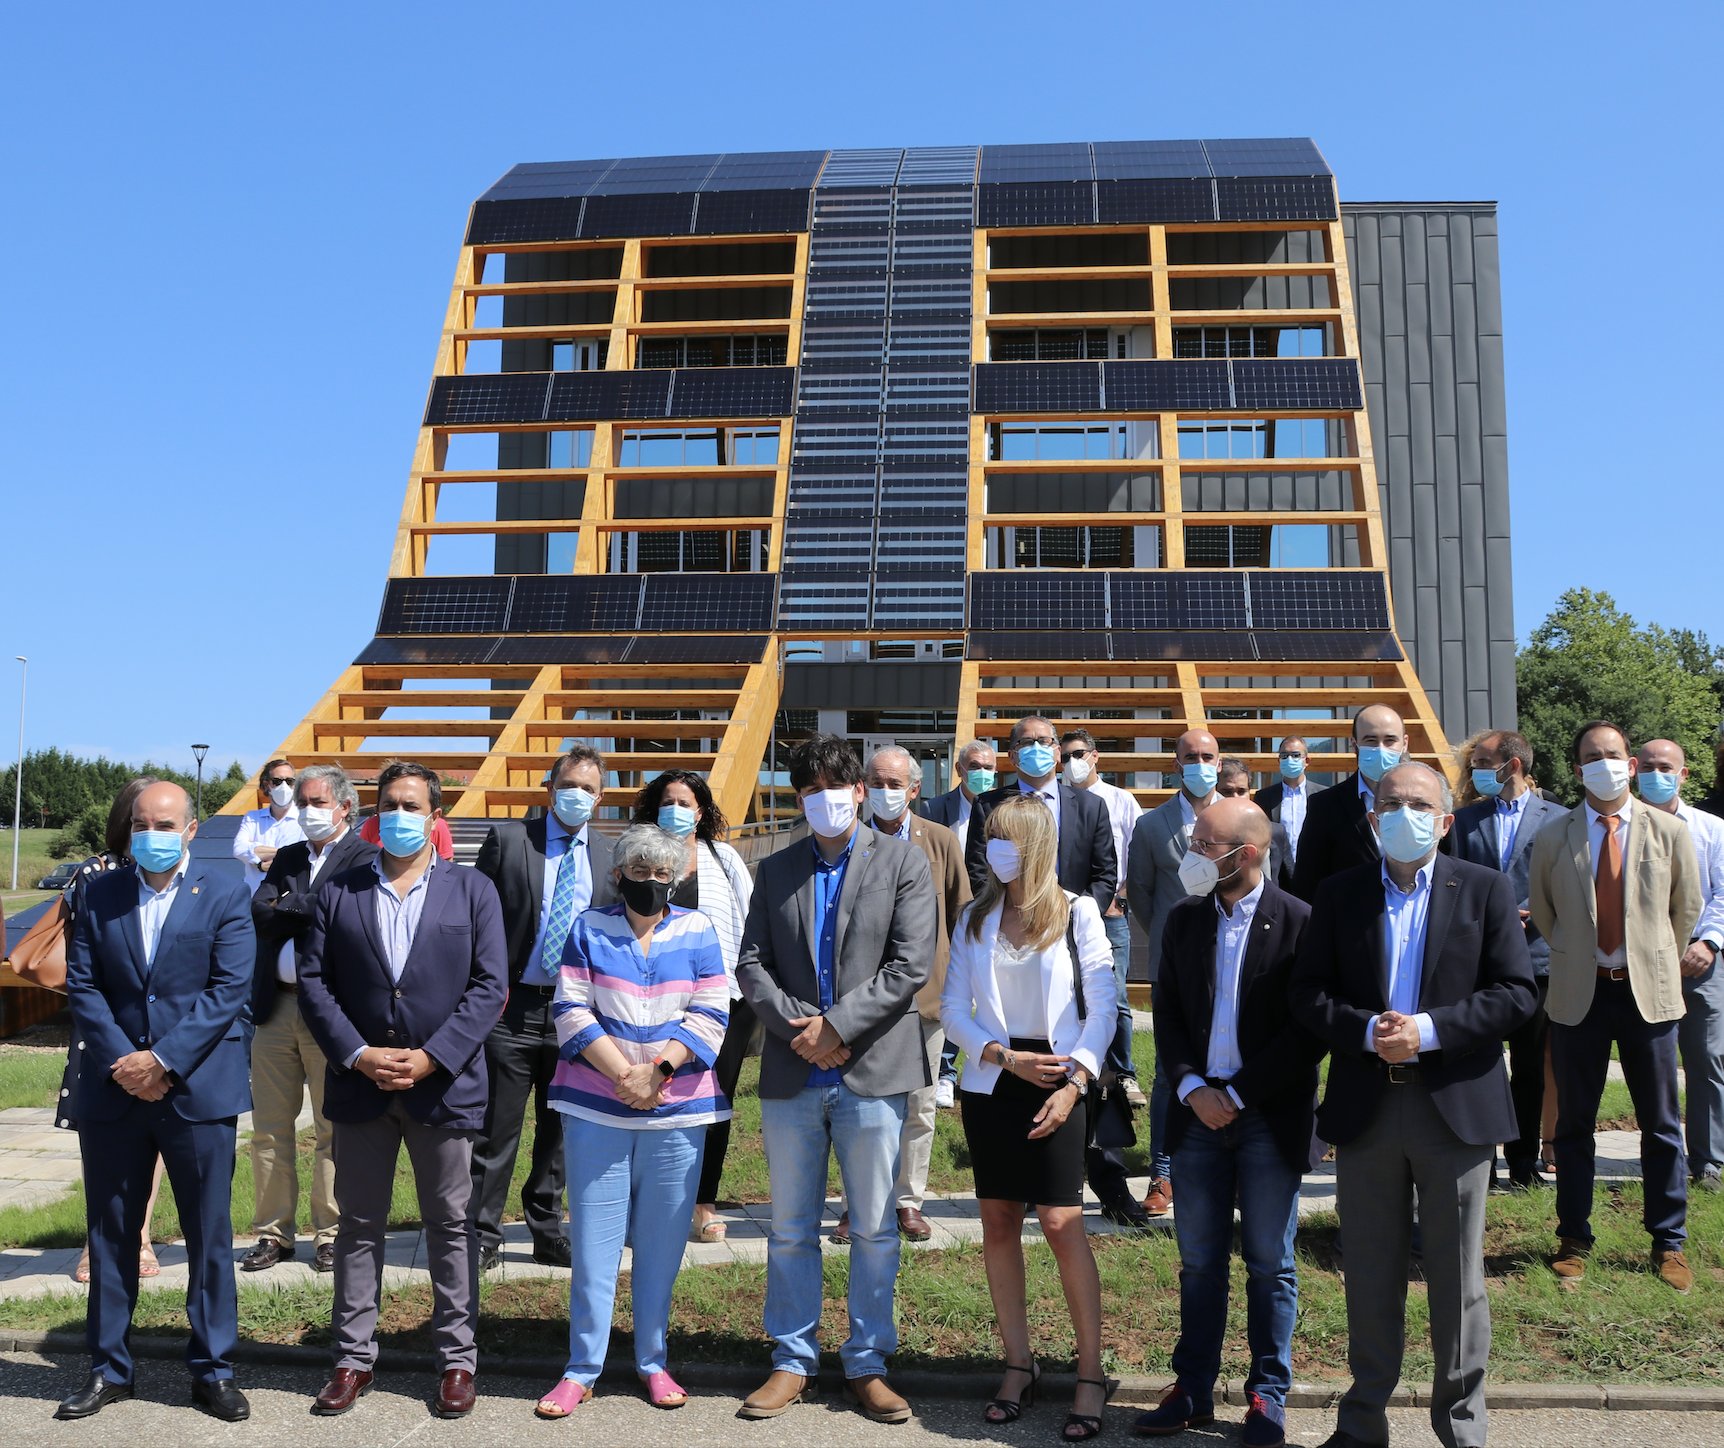 Inauguración del nuevo edificio inteligente y eco-sostenible Greenspace ubicado en el Parque Científico y Tecnológico de Gijón